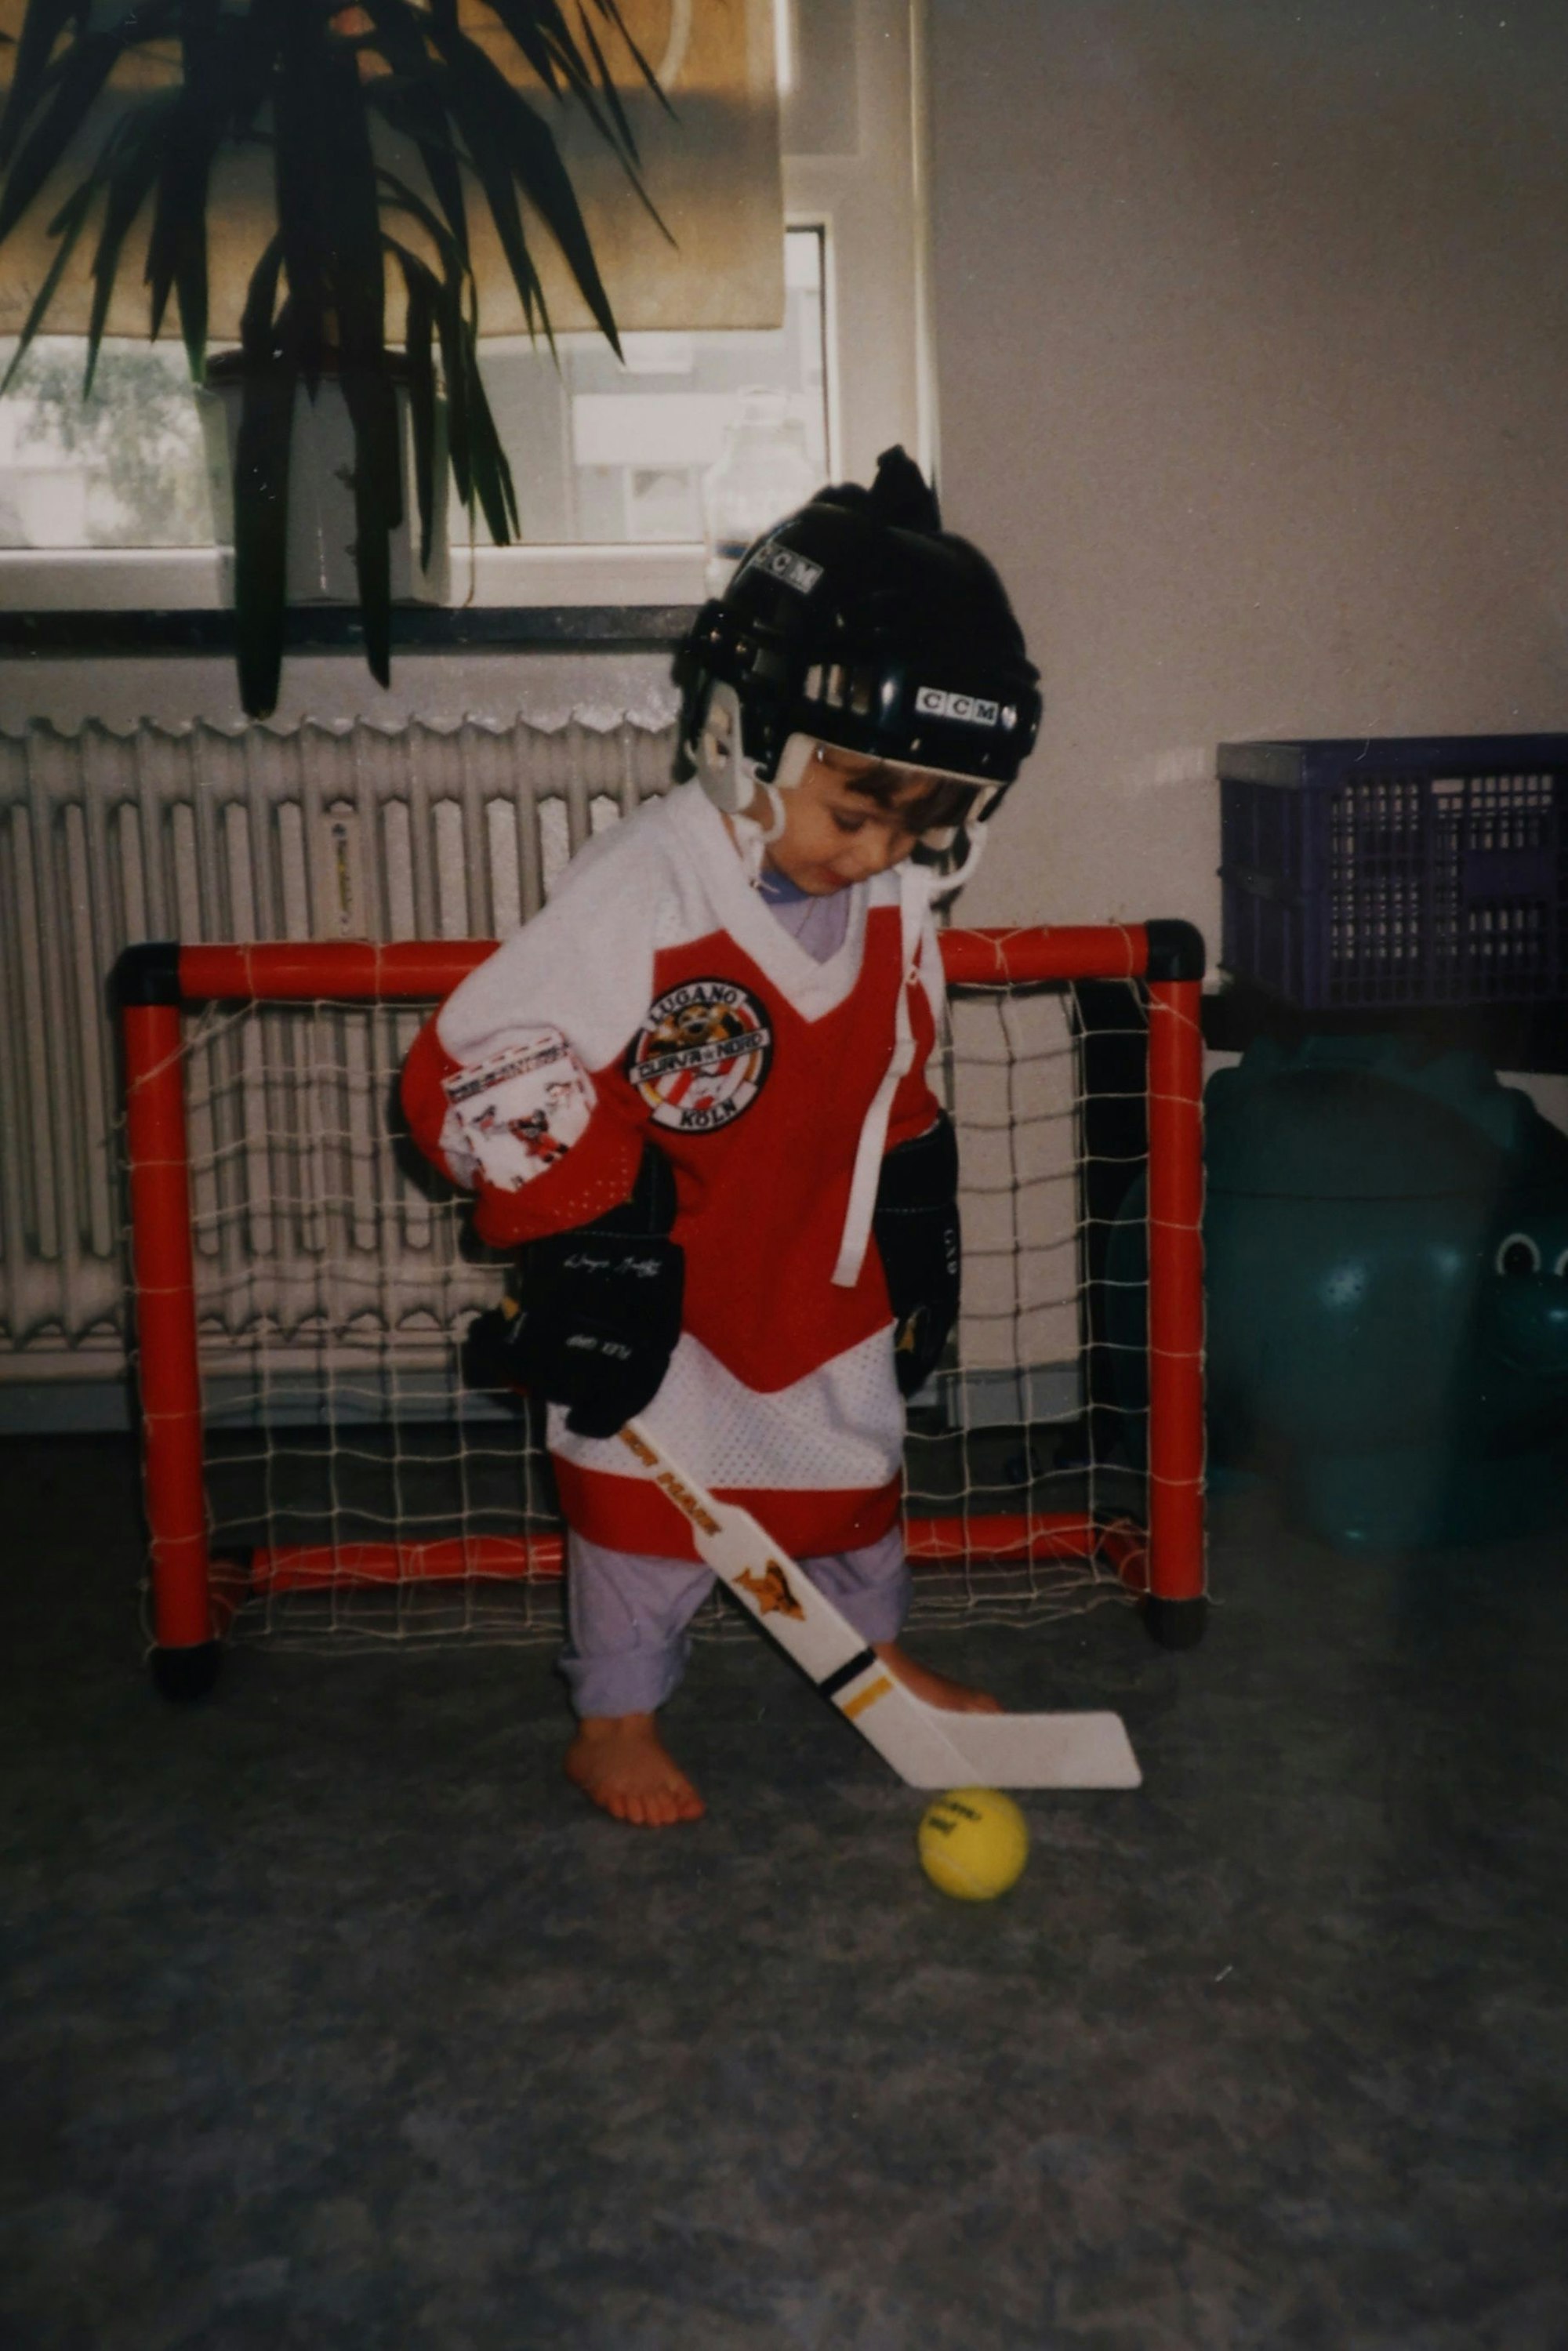 Der kleine Sascha vor einem kleinen Tor, mit Eishockey-Trikot, -Schläger und -Helm.